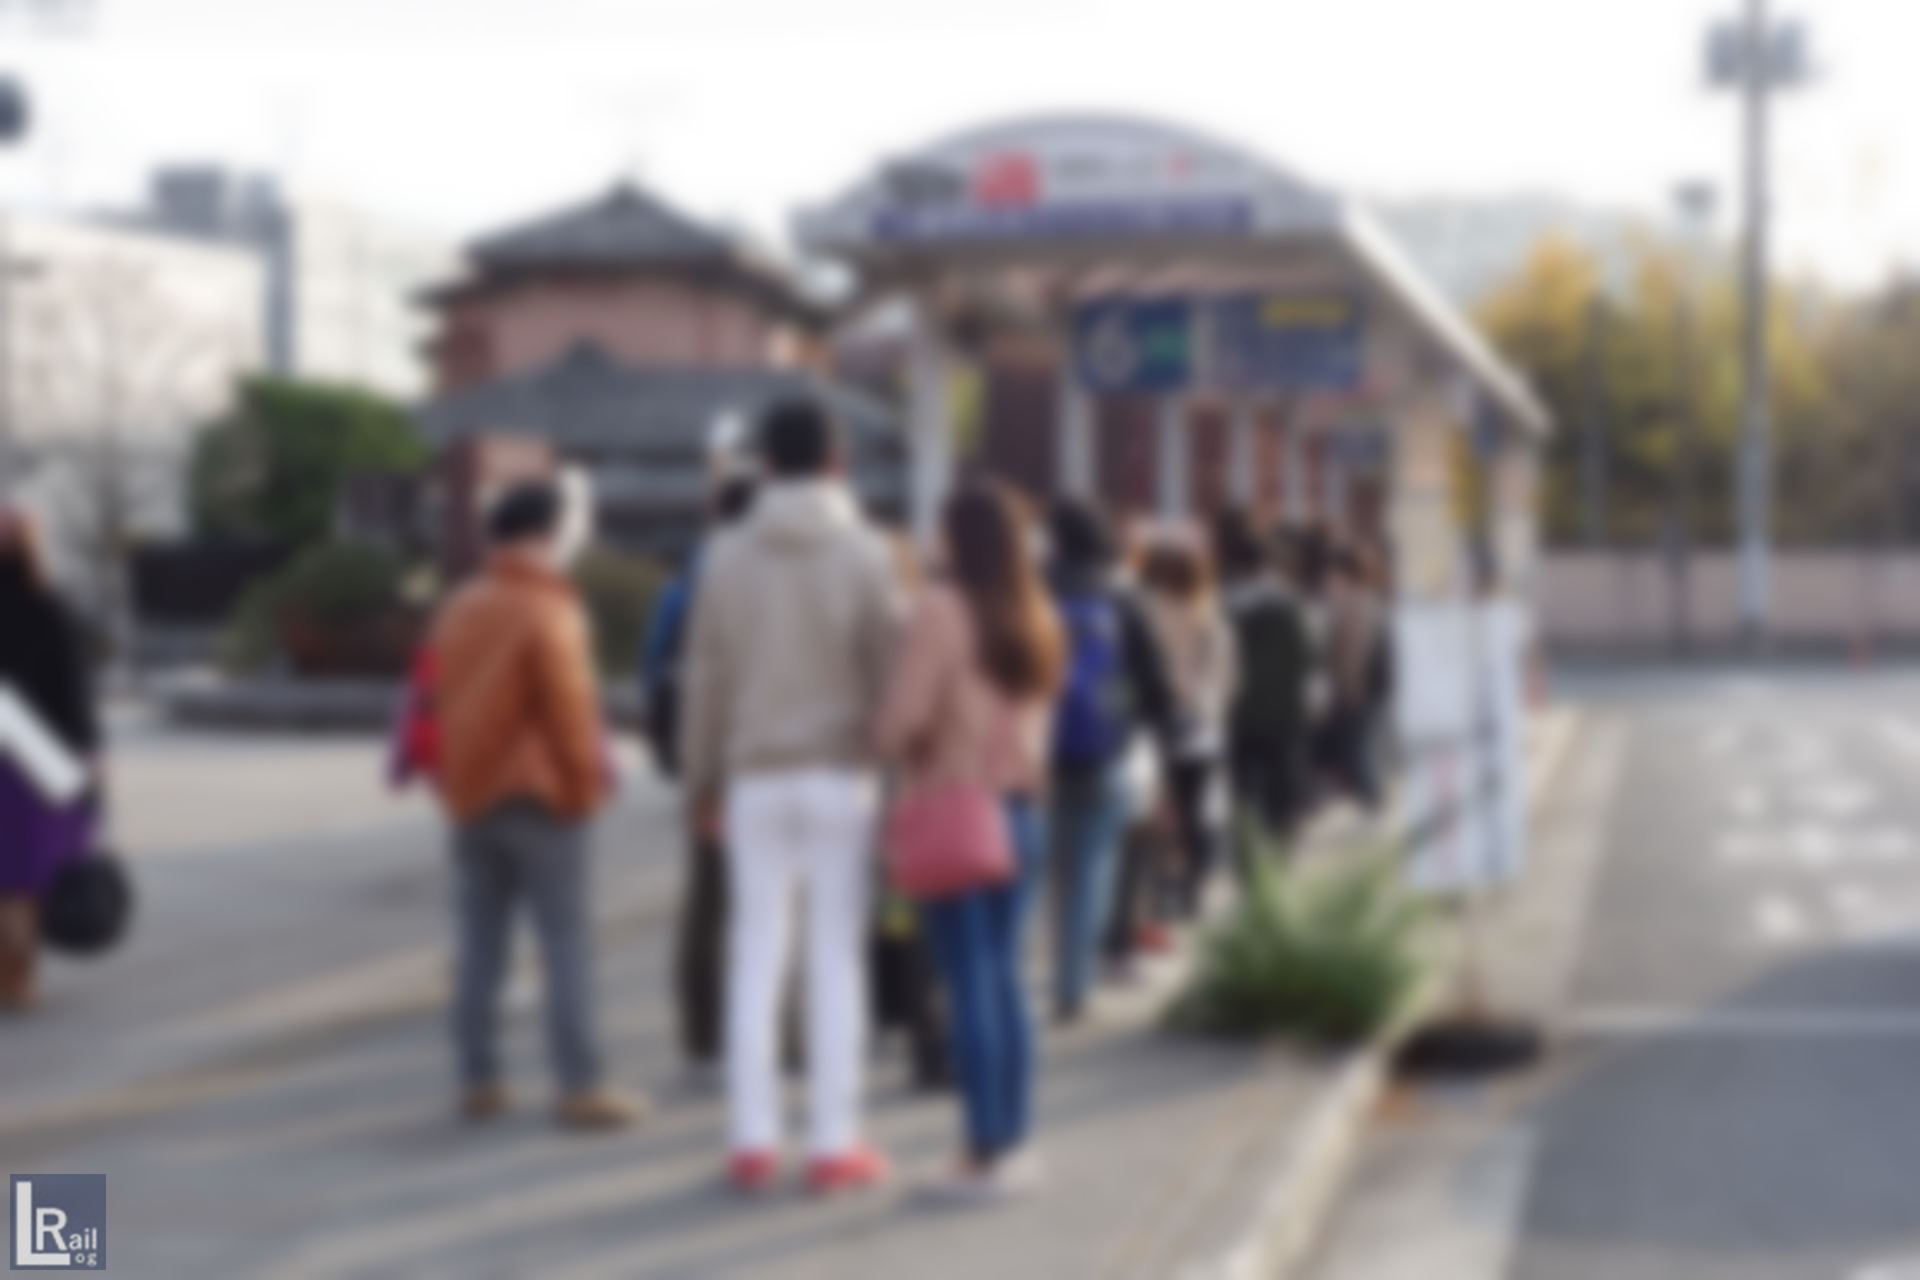 11月の休日、紅葉シーズン朝の西武秩父駅とバス停の様子